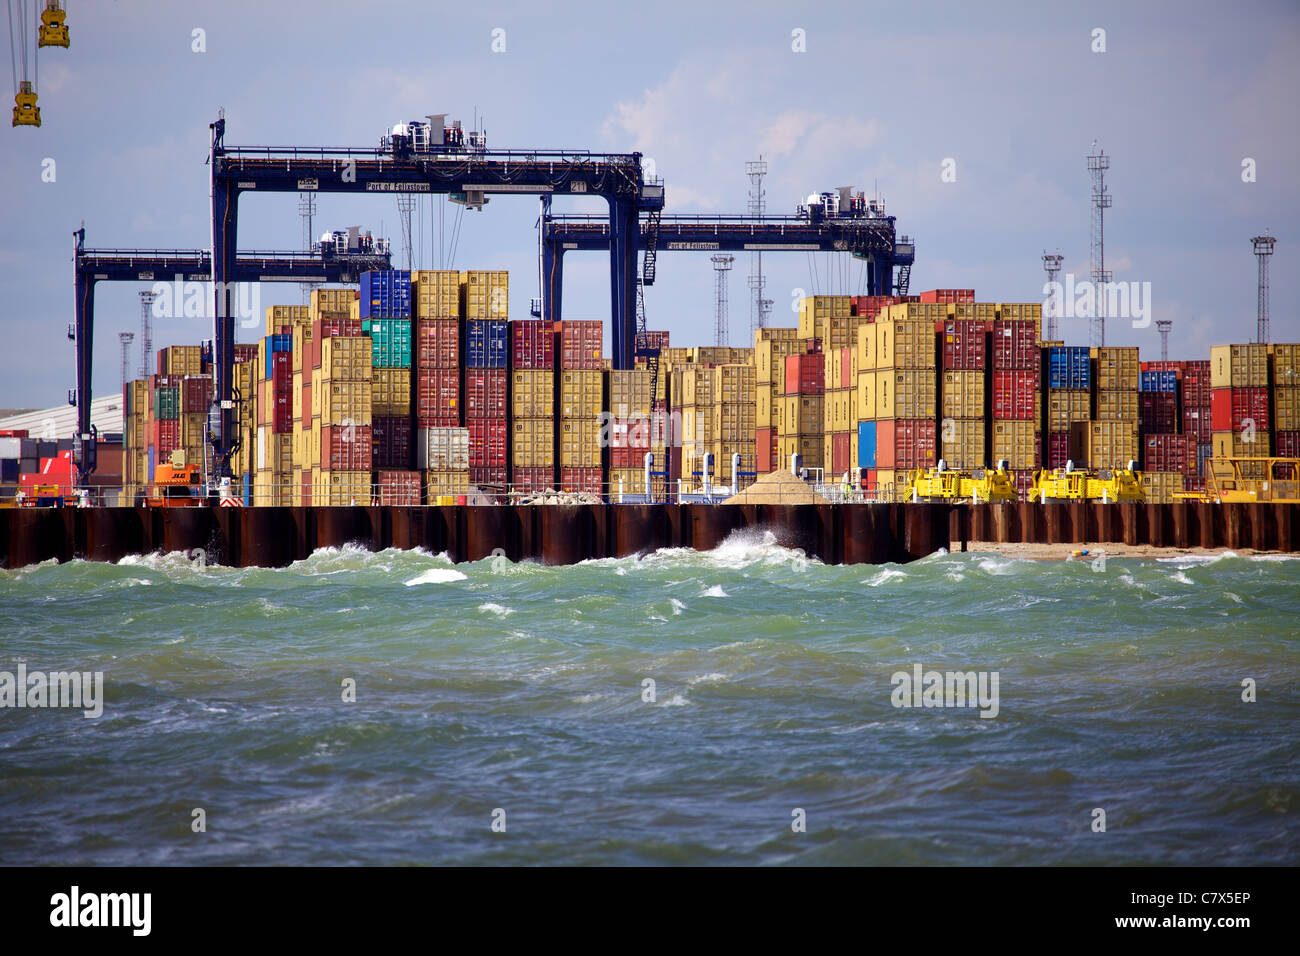 Global Britain International Trade - Hafen von Felixstowe International Trade - Container im Hafen von Felixstowe in Großbritannien gestapelt Stockfoto